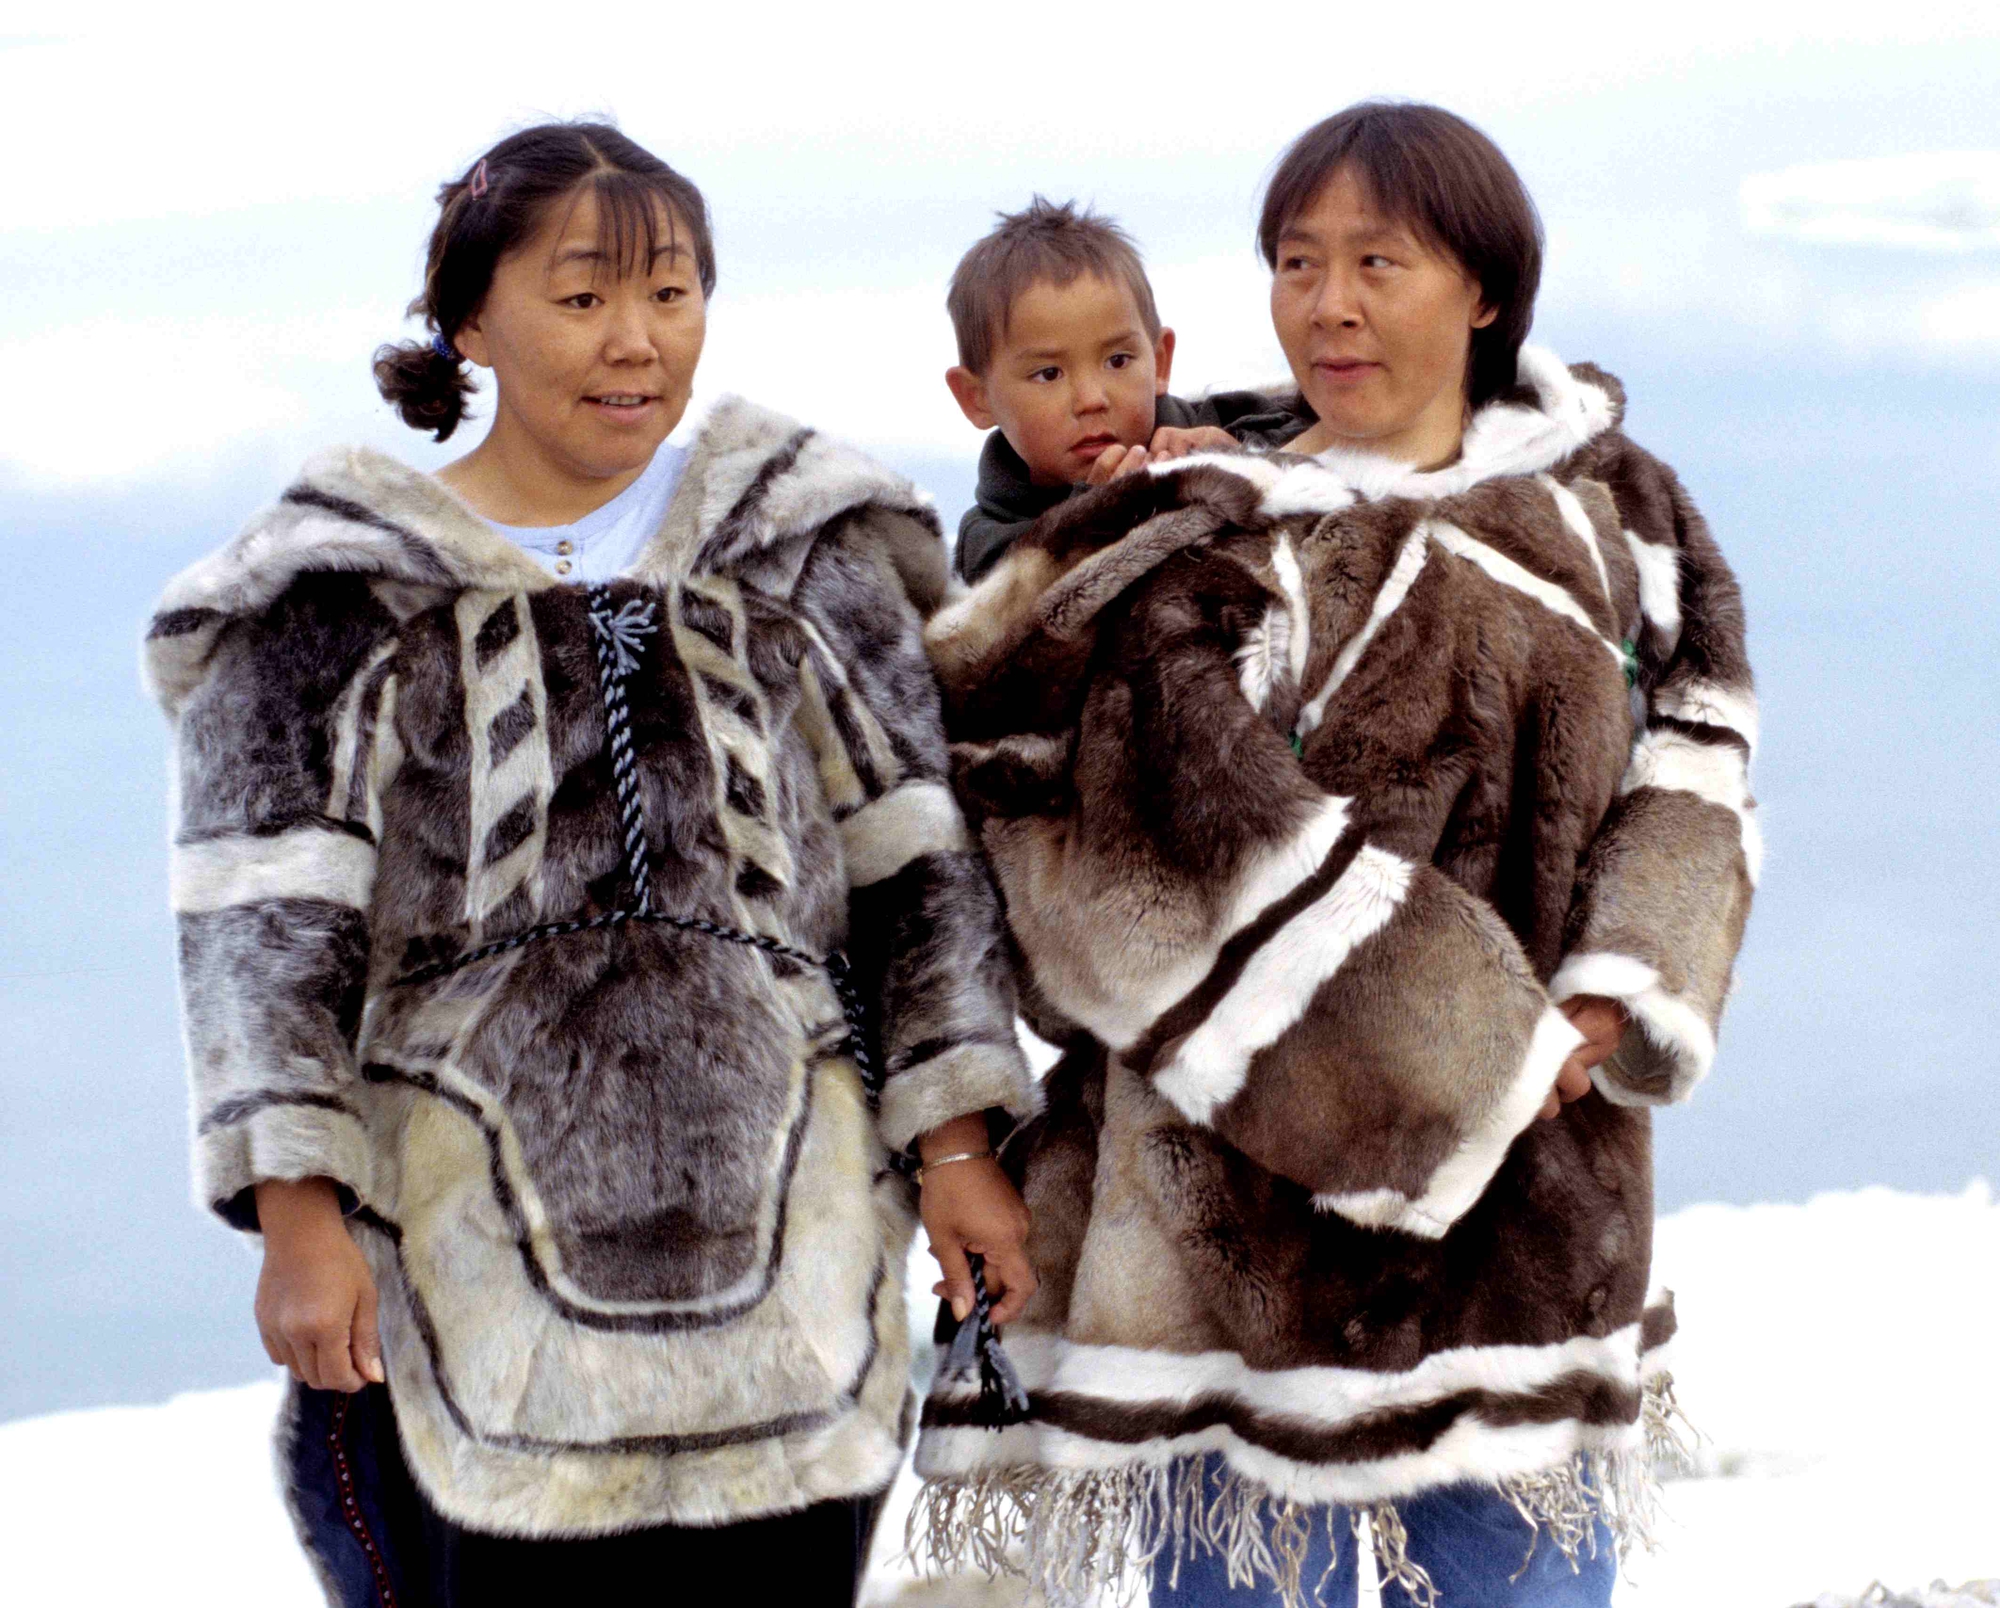 Tại sao người Inuit lại có tập tục trao đổi vợ? - Ảnh 2.